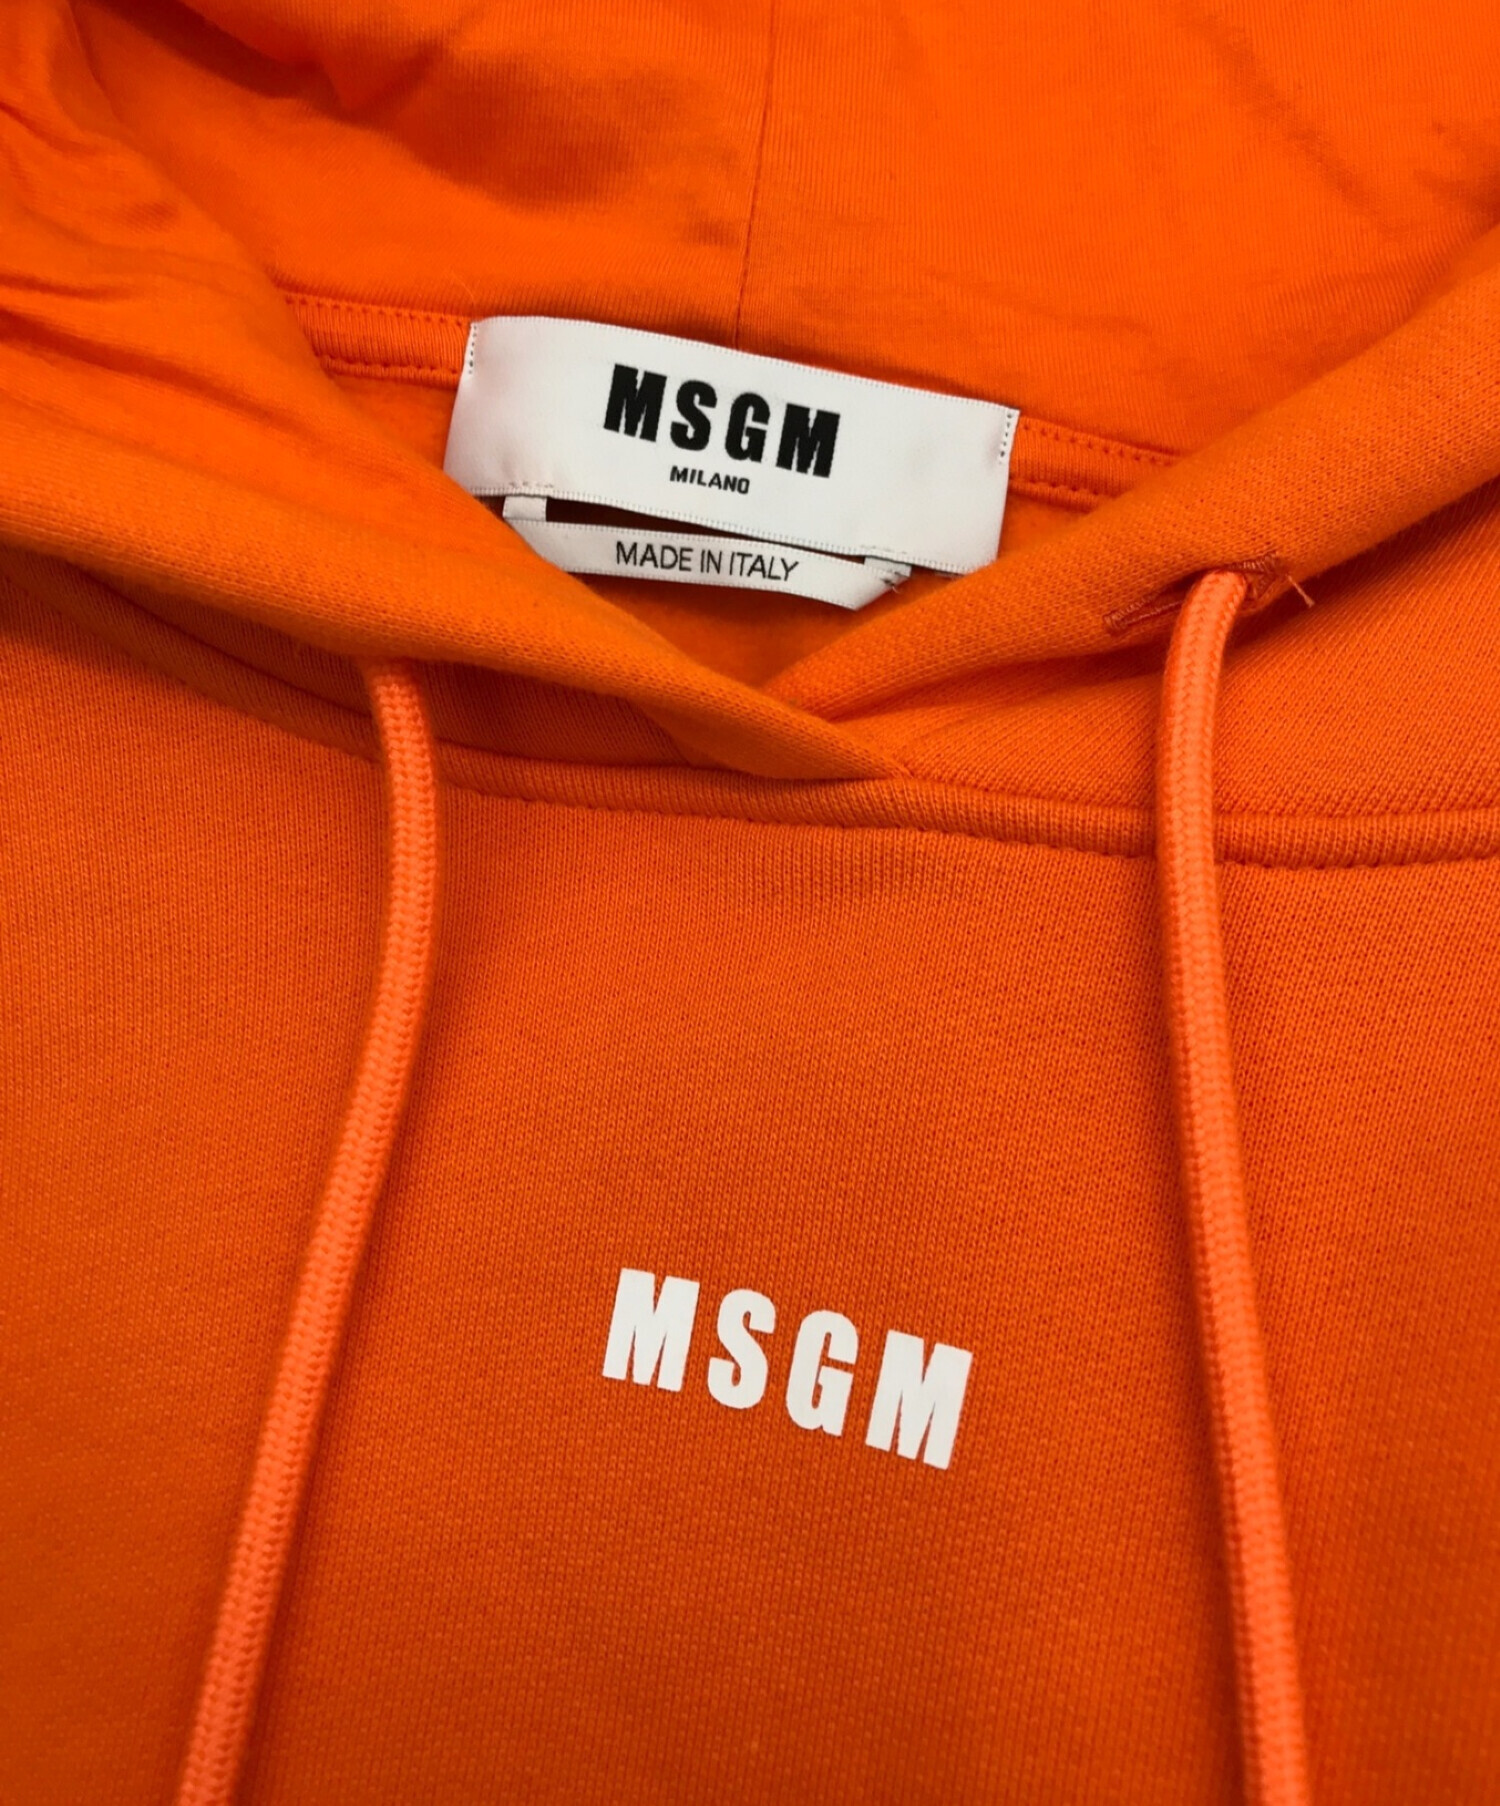 MSGM (エムエスジーエム) プルオーバーパーカー オレンジ サイズ:S